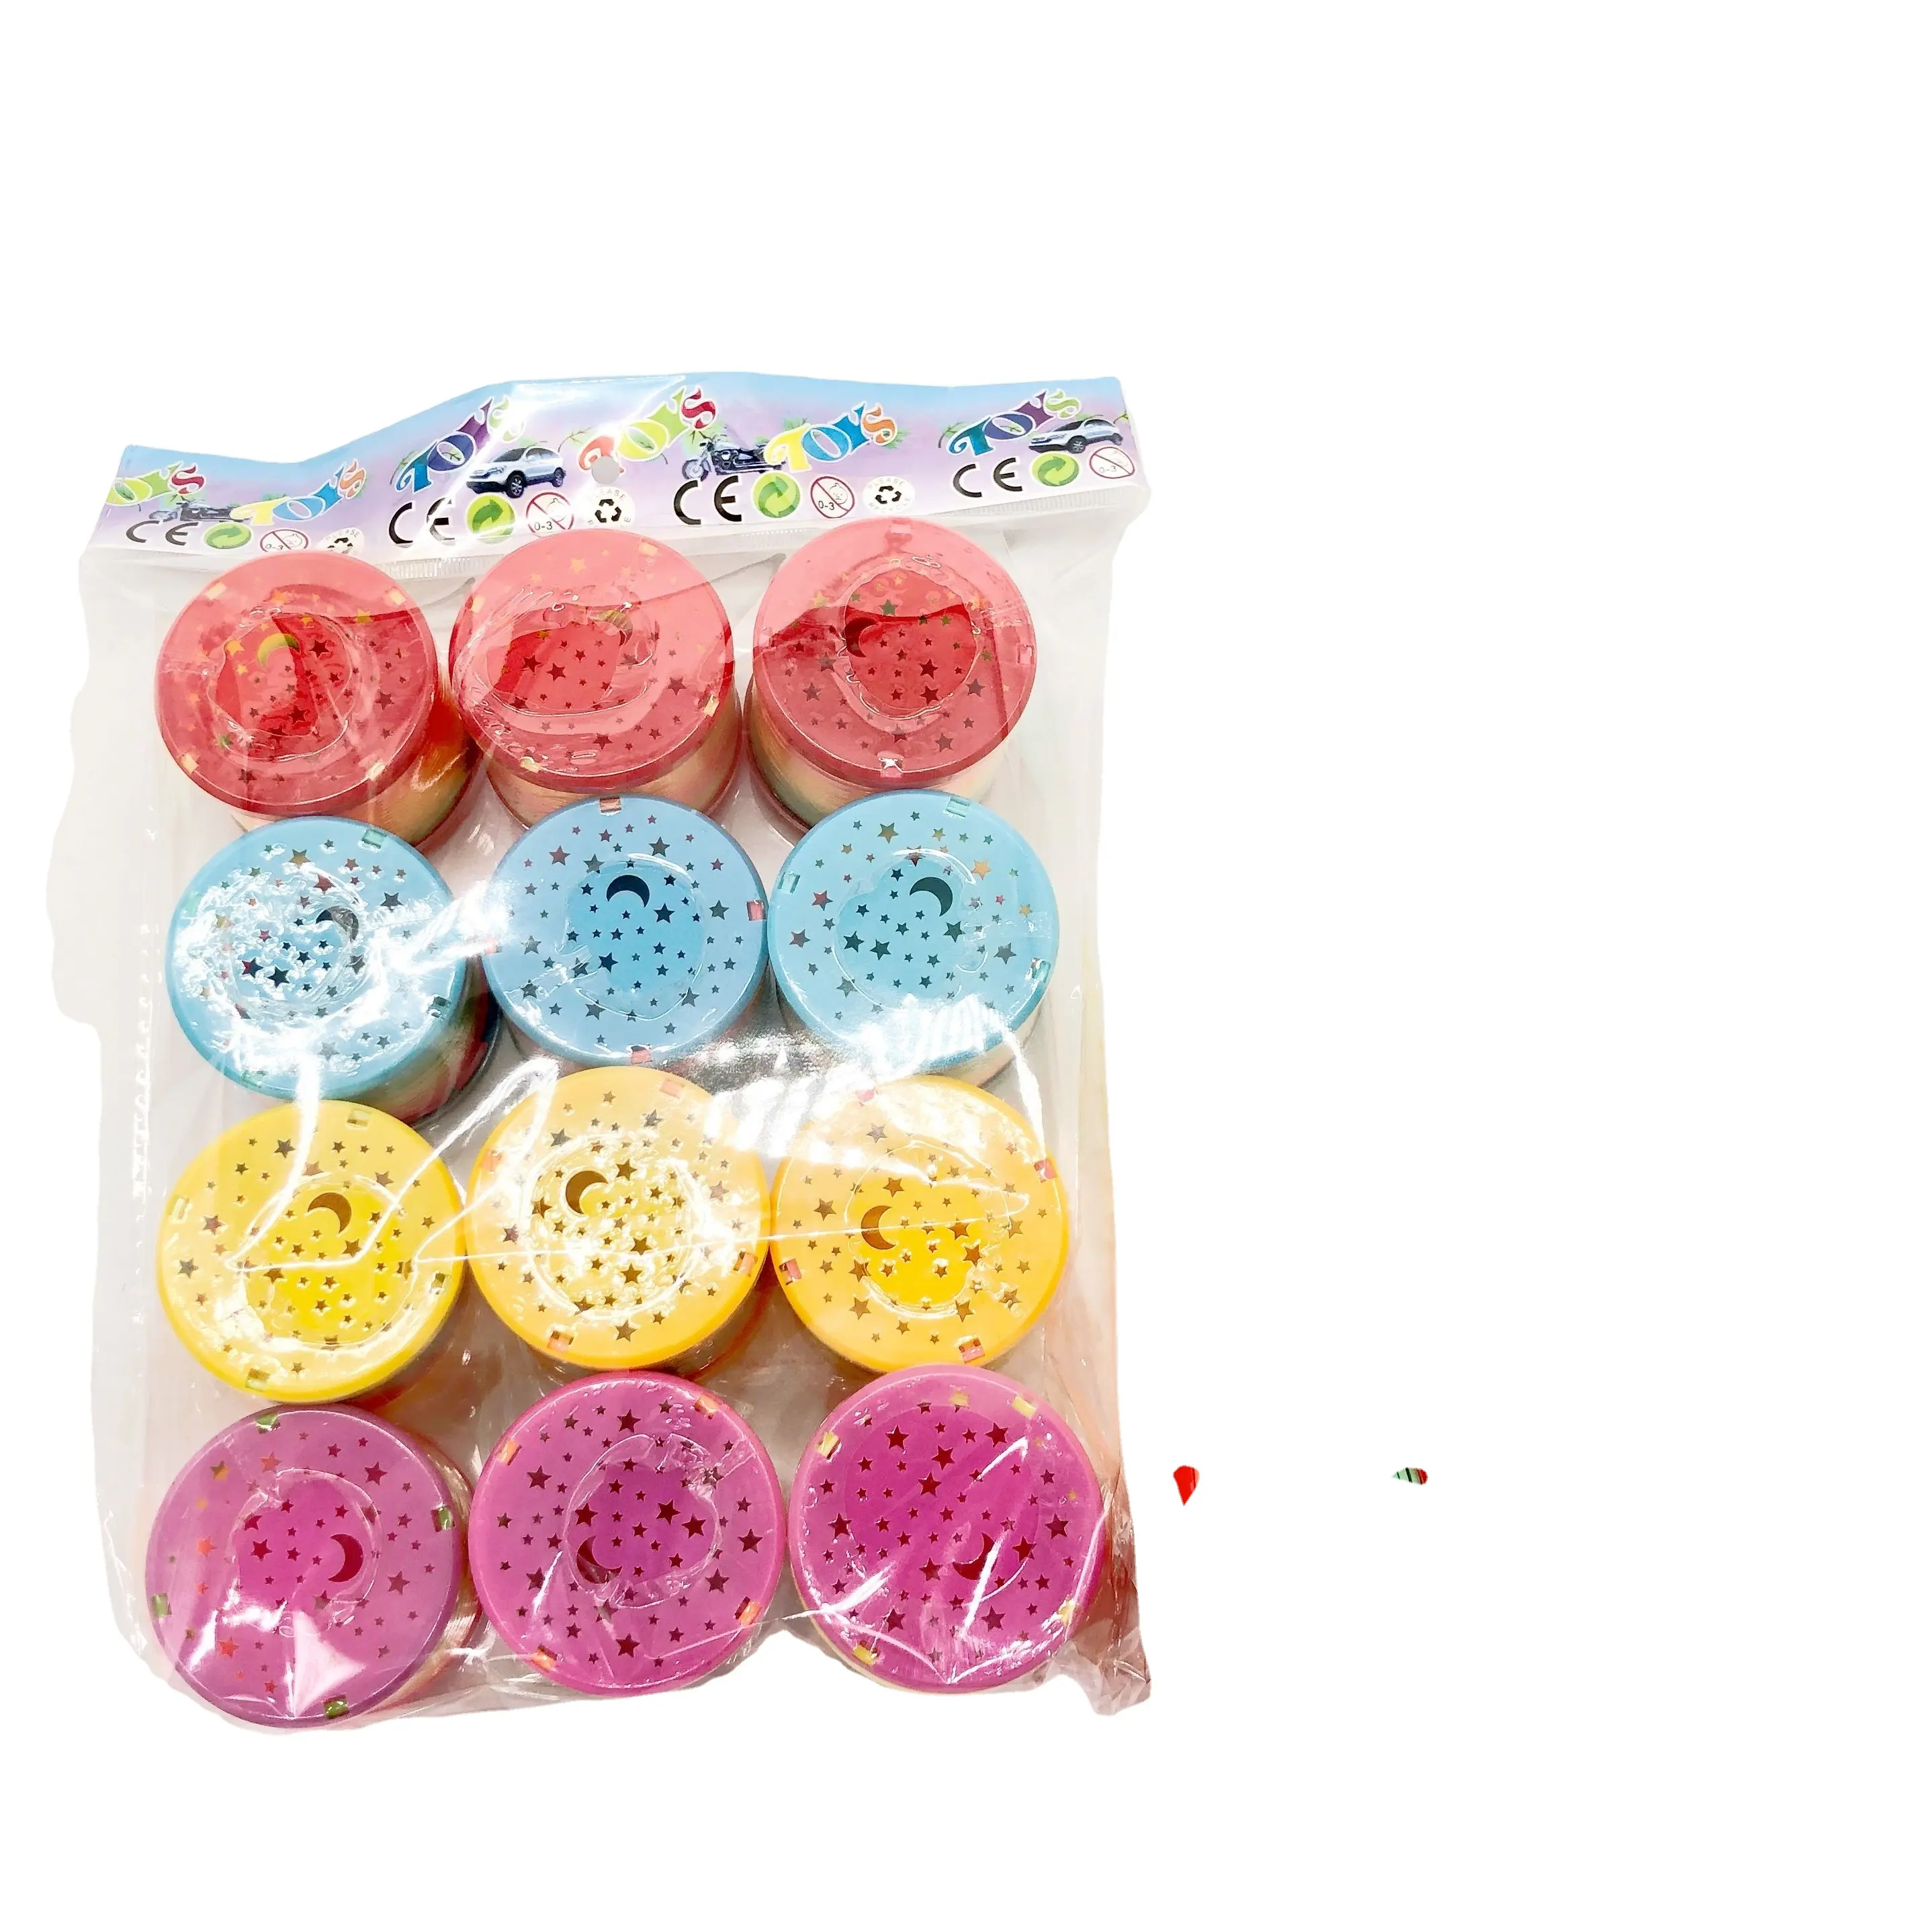 Molle elicoidali inferiori a buon mercato giocattolo a molla in plastica arcobaleno giocattolo Slinki in plastica per bambini 7 adulti Jumbo Top Rainbow Spring Toy